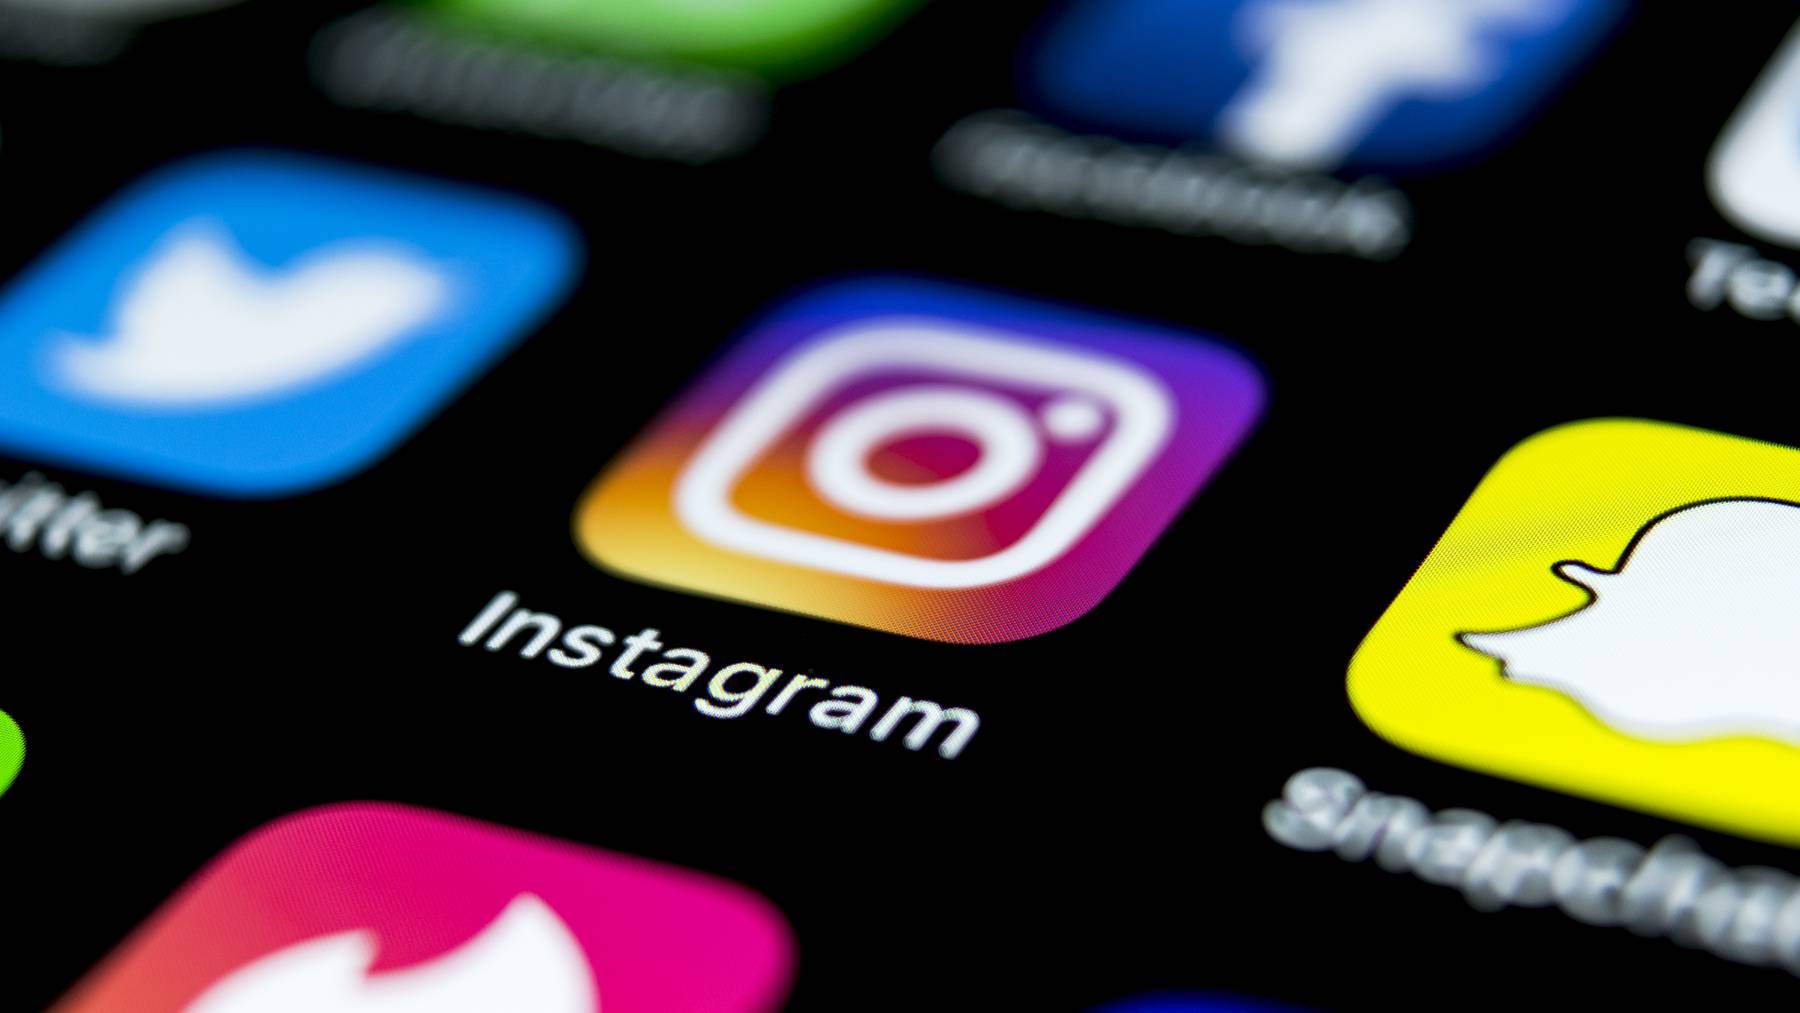 Der Betrugsversuch geschieht über gehackte Instagram-Profile. (Symbolbild)